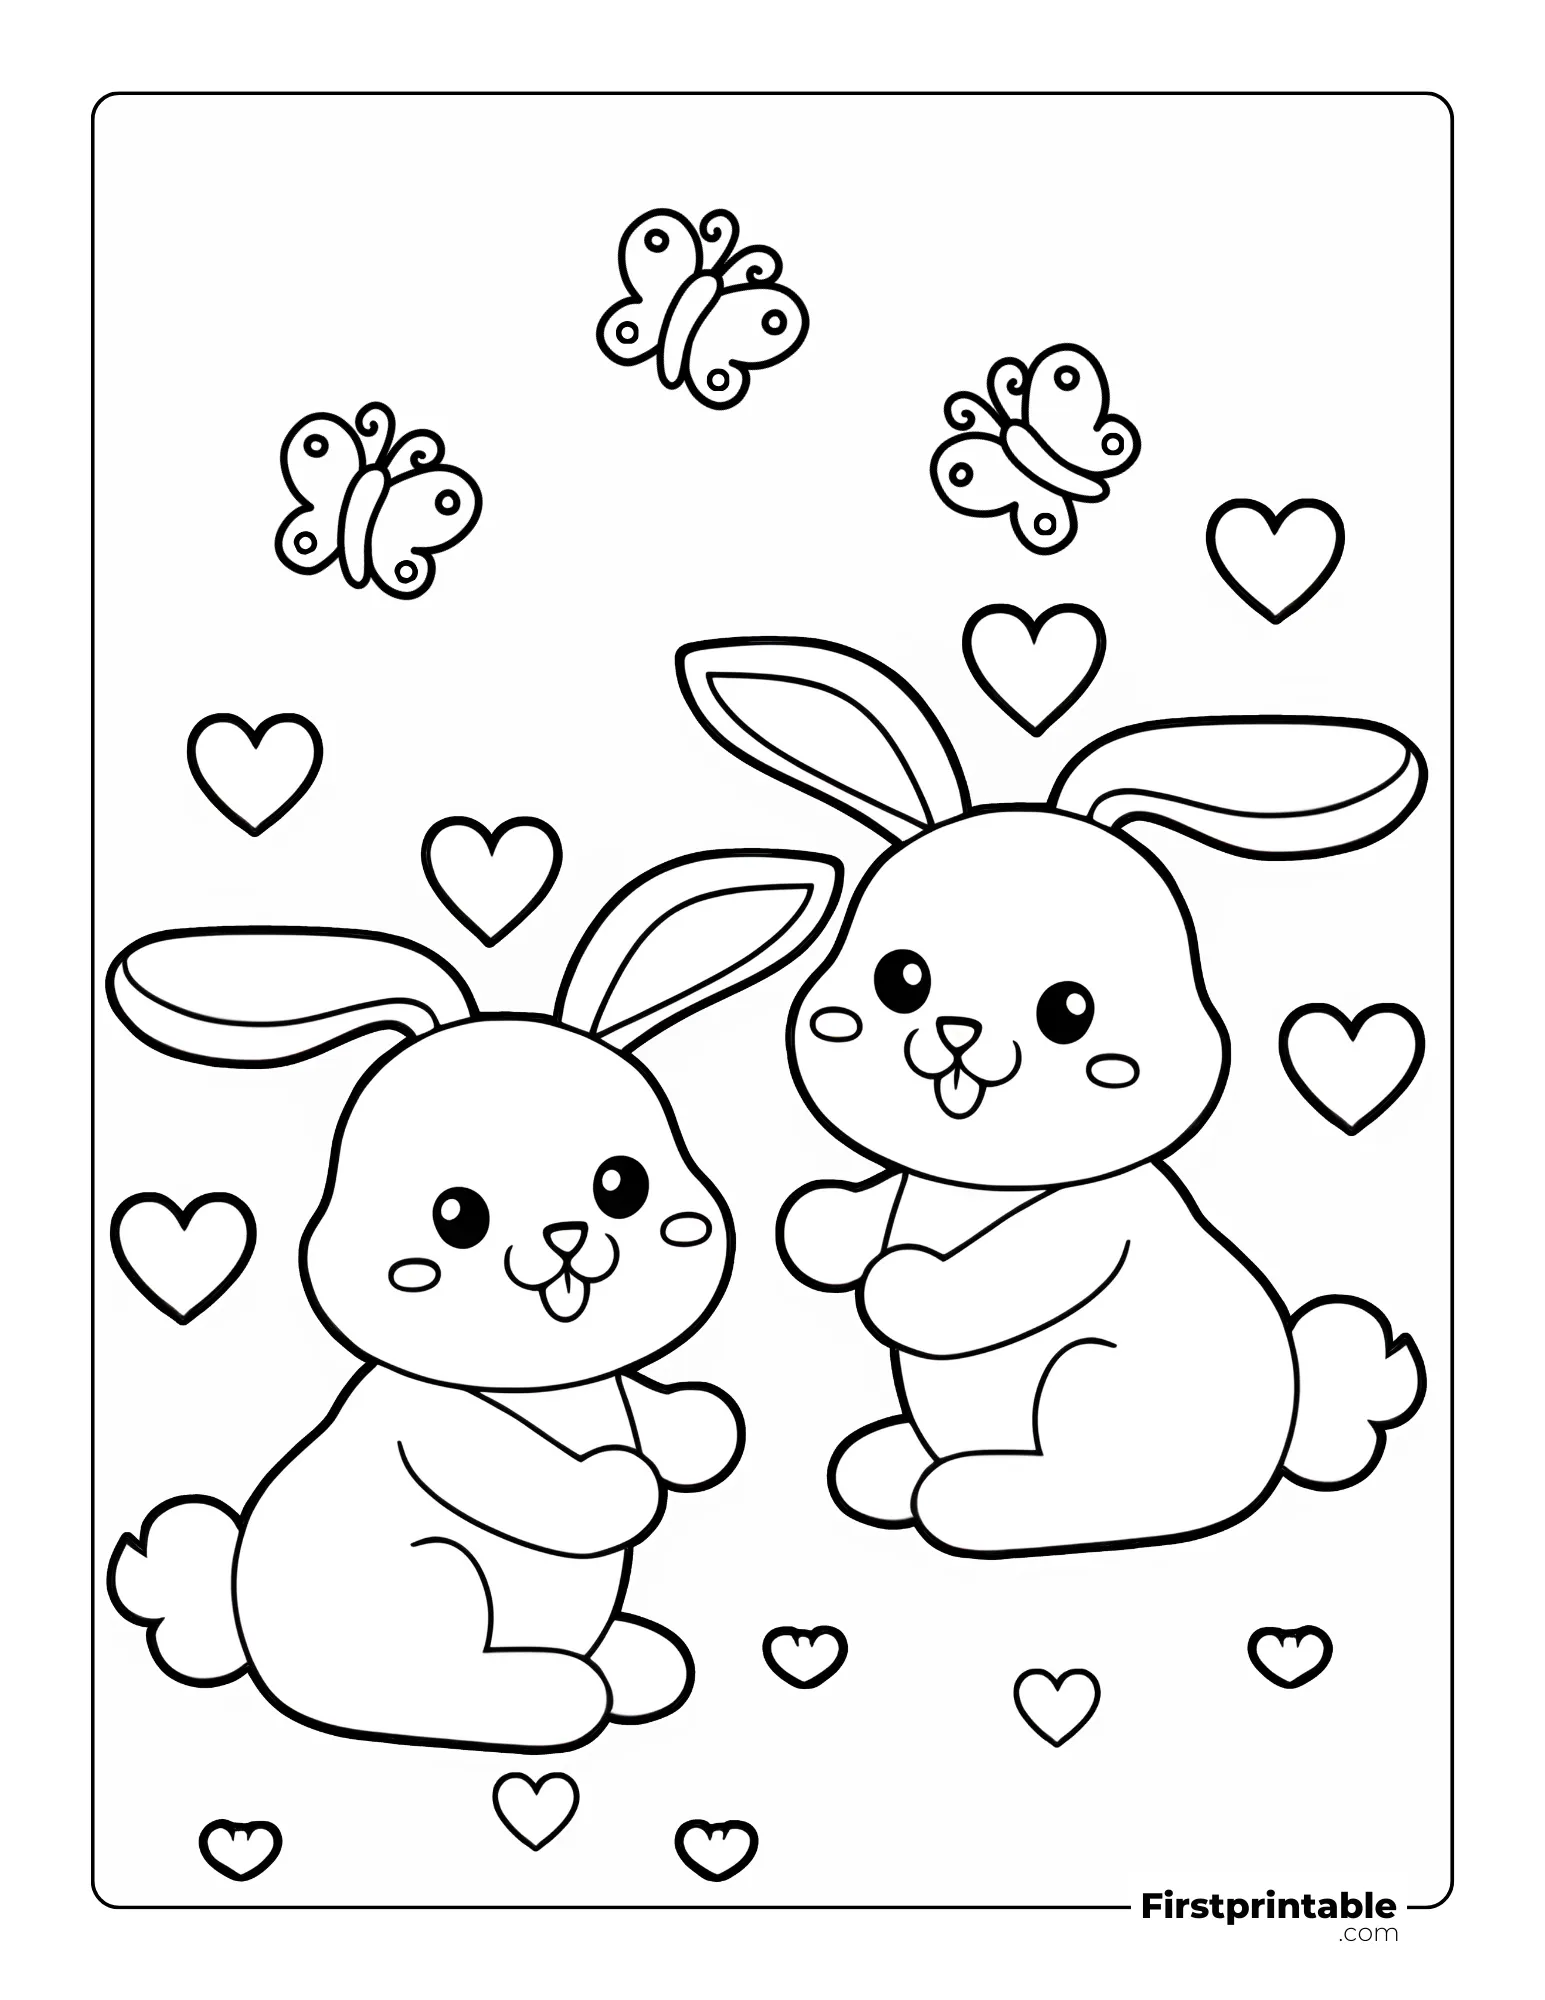 Bunny coloring sheet